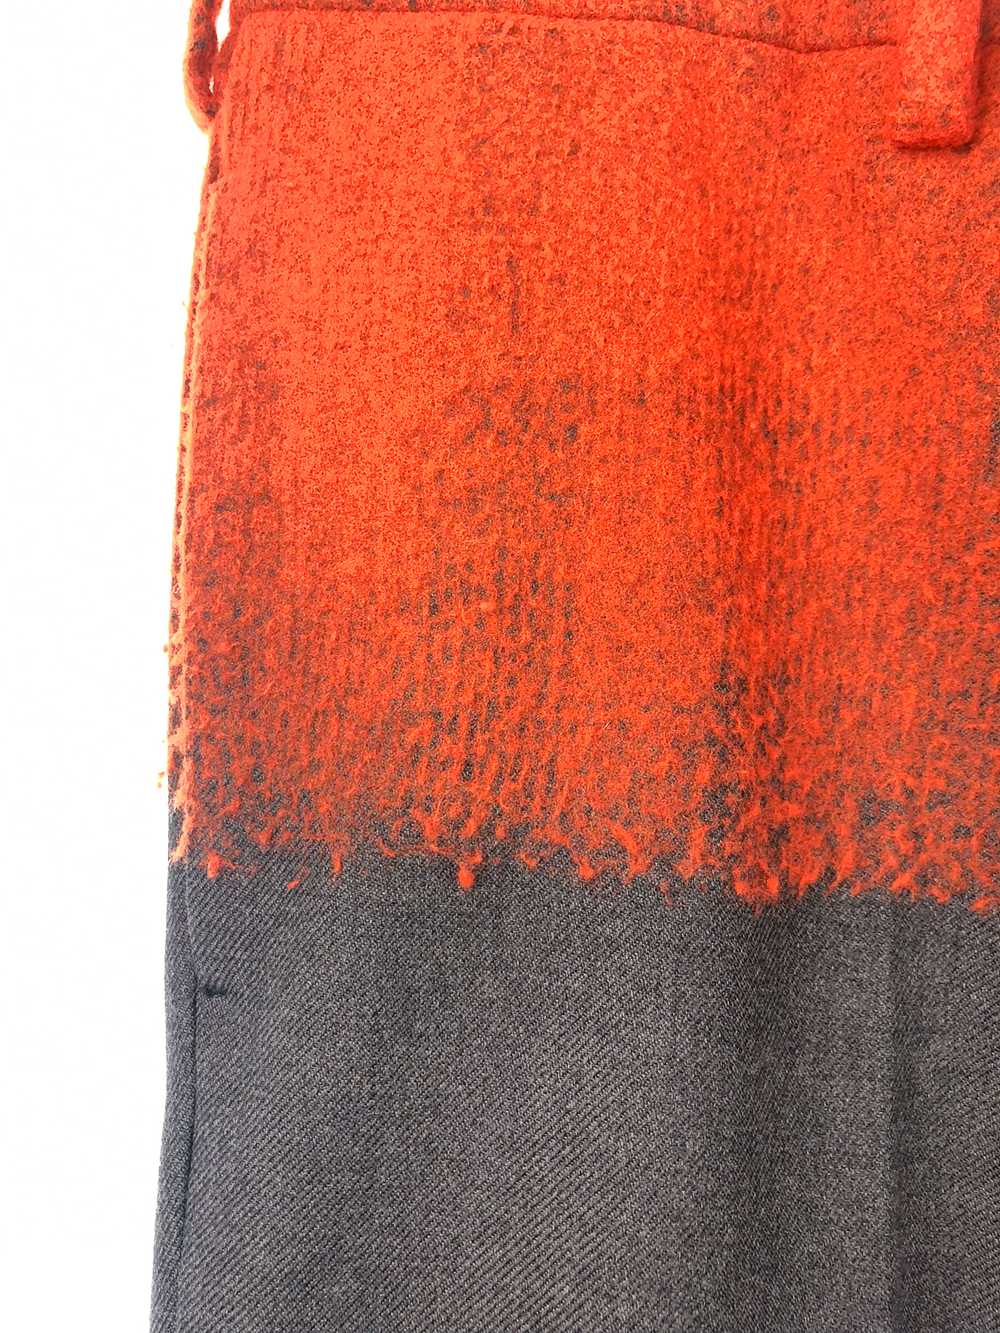 FW07 Gradient Broiled Wool Slacks - image 2